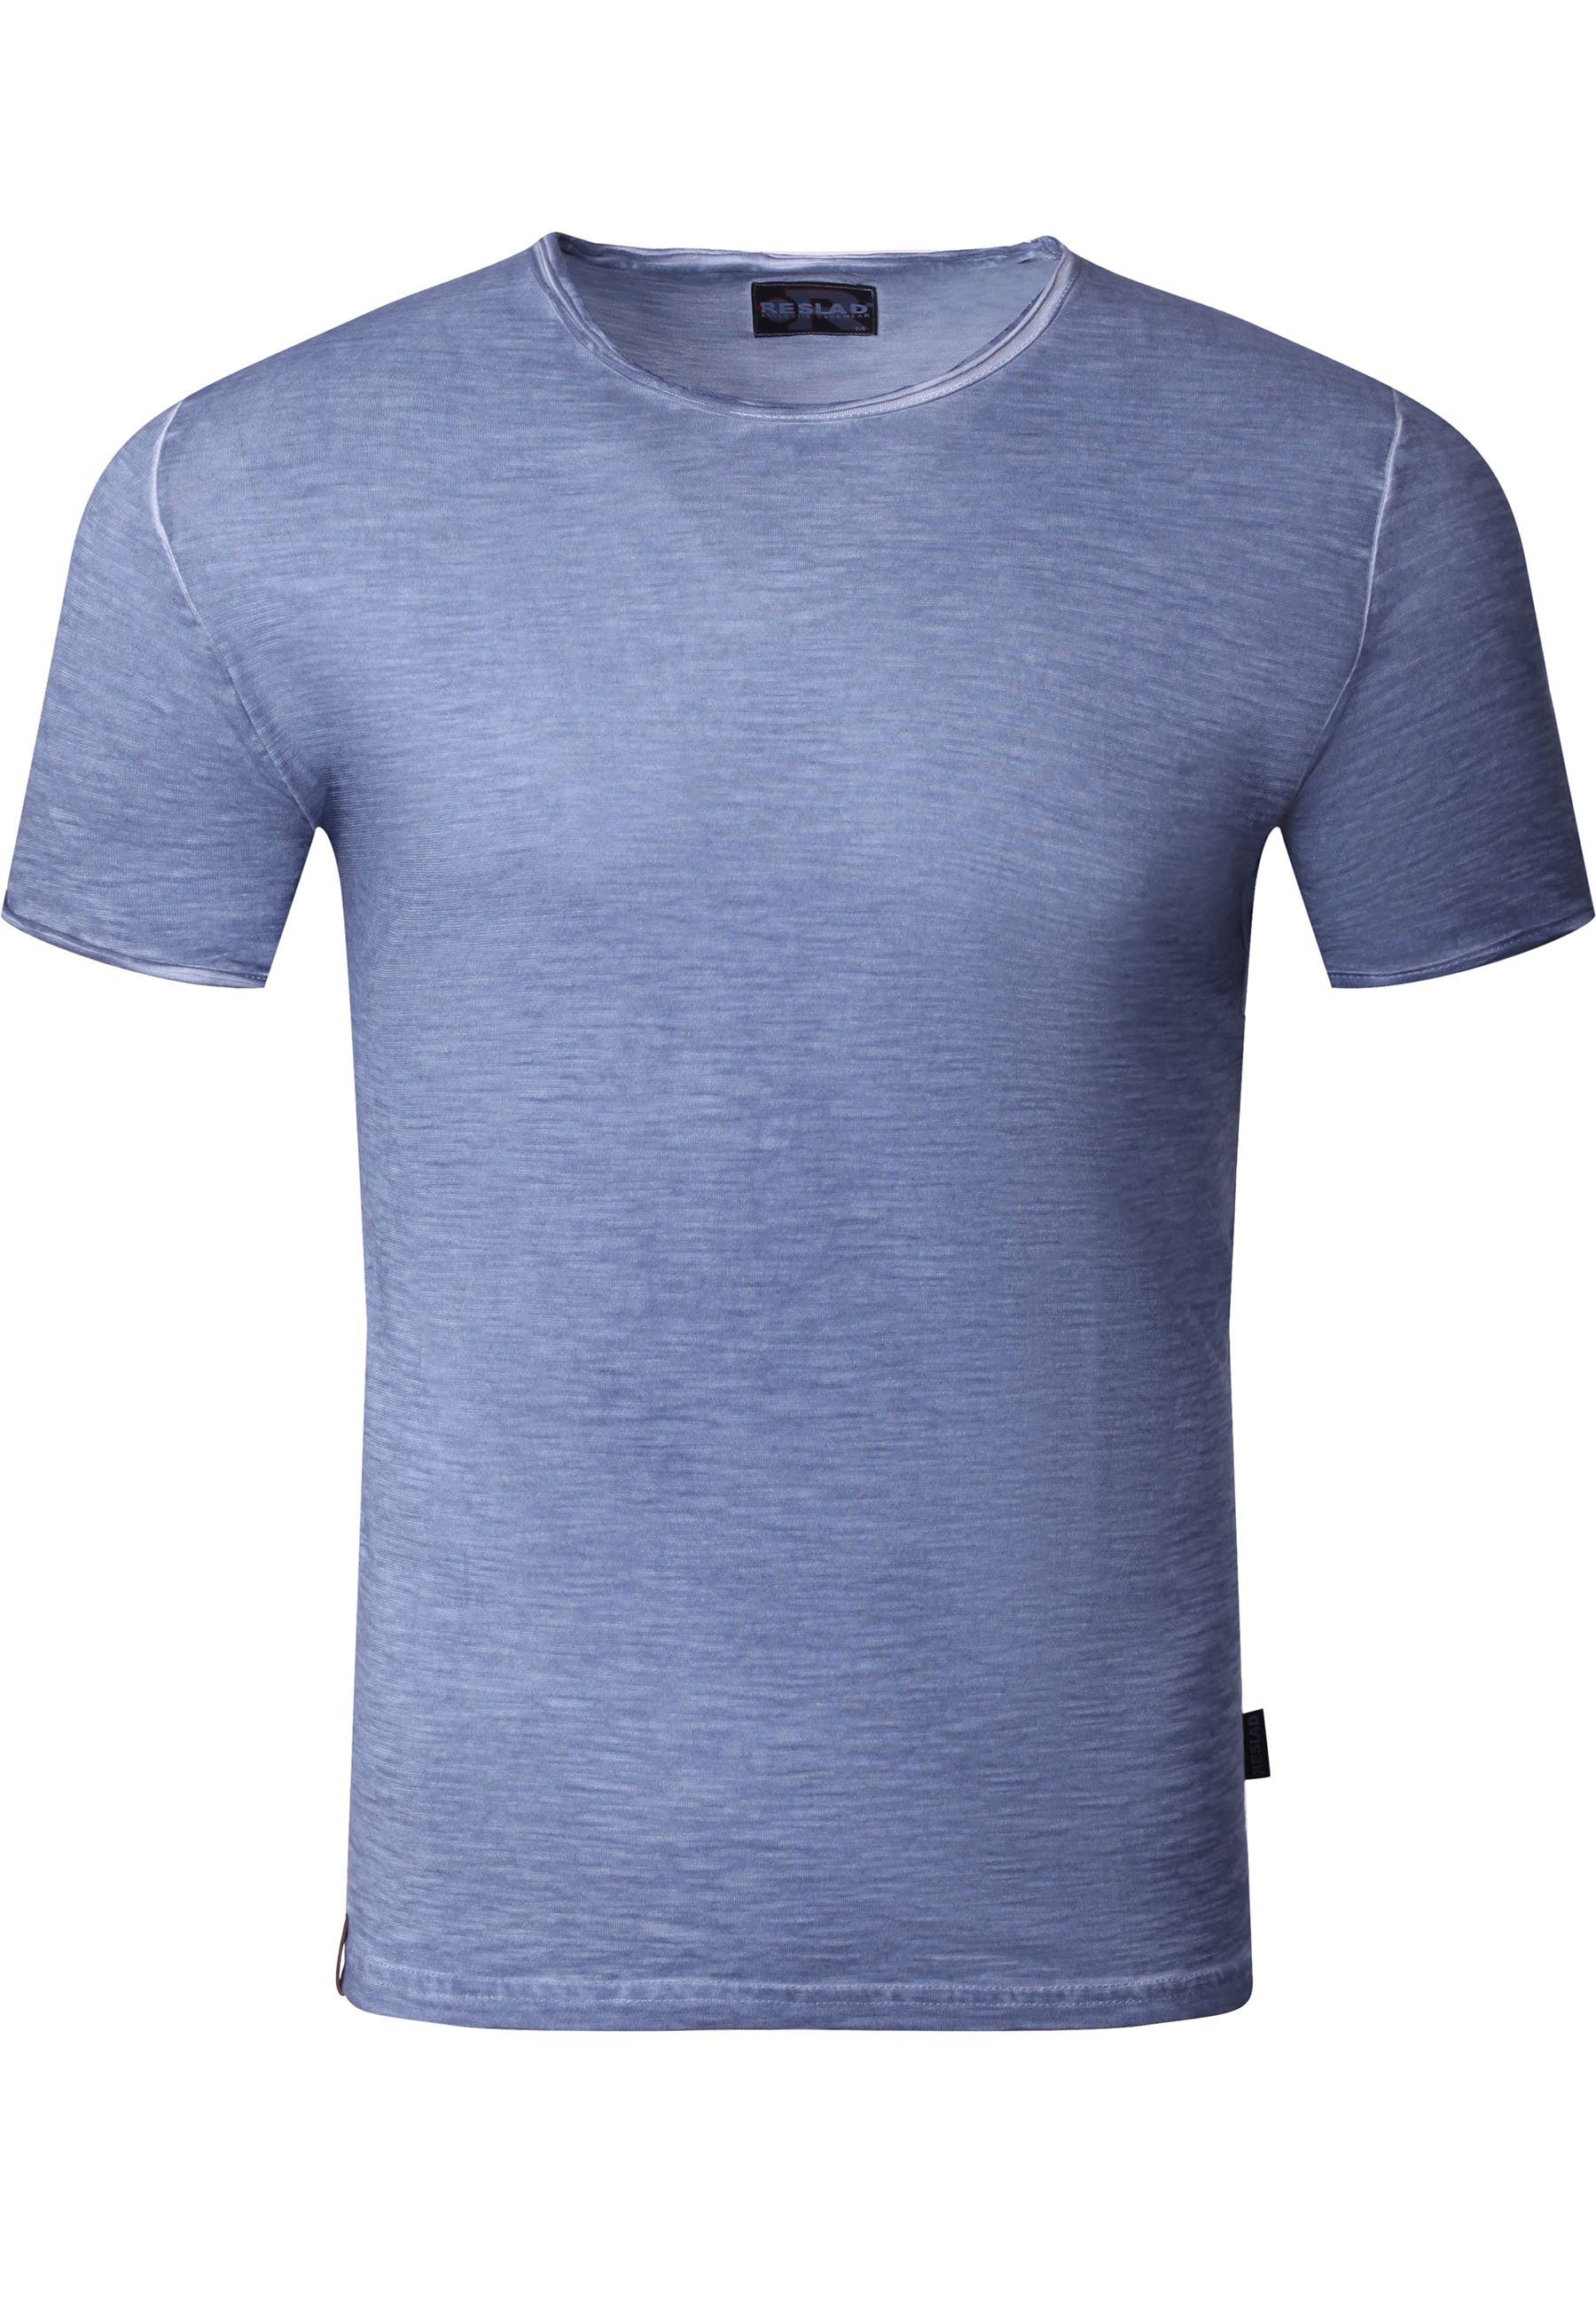 Vintage verwaschen Style Reslad Reslad (1-tlg) Männer indigo-blau Rundhals Vintage Herren T-Shirt Männer Shirt Optik Rundhalsausschnitt Shirt T-Shirt